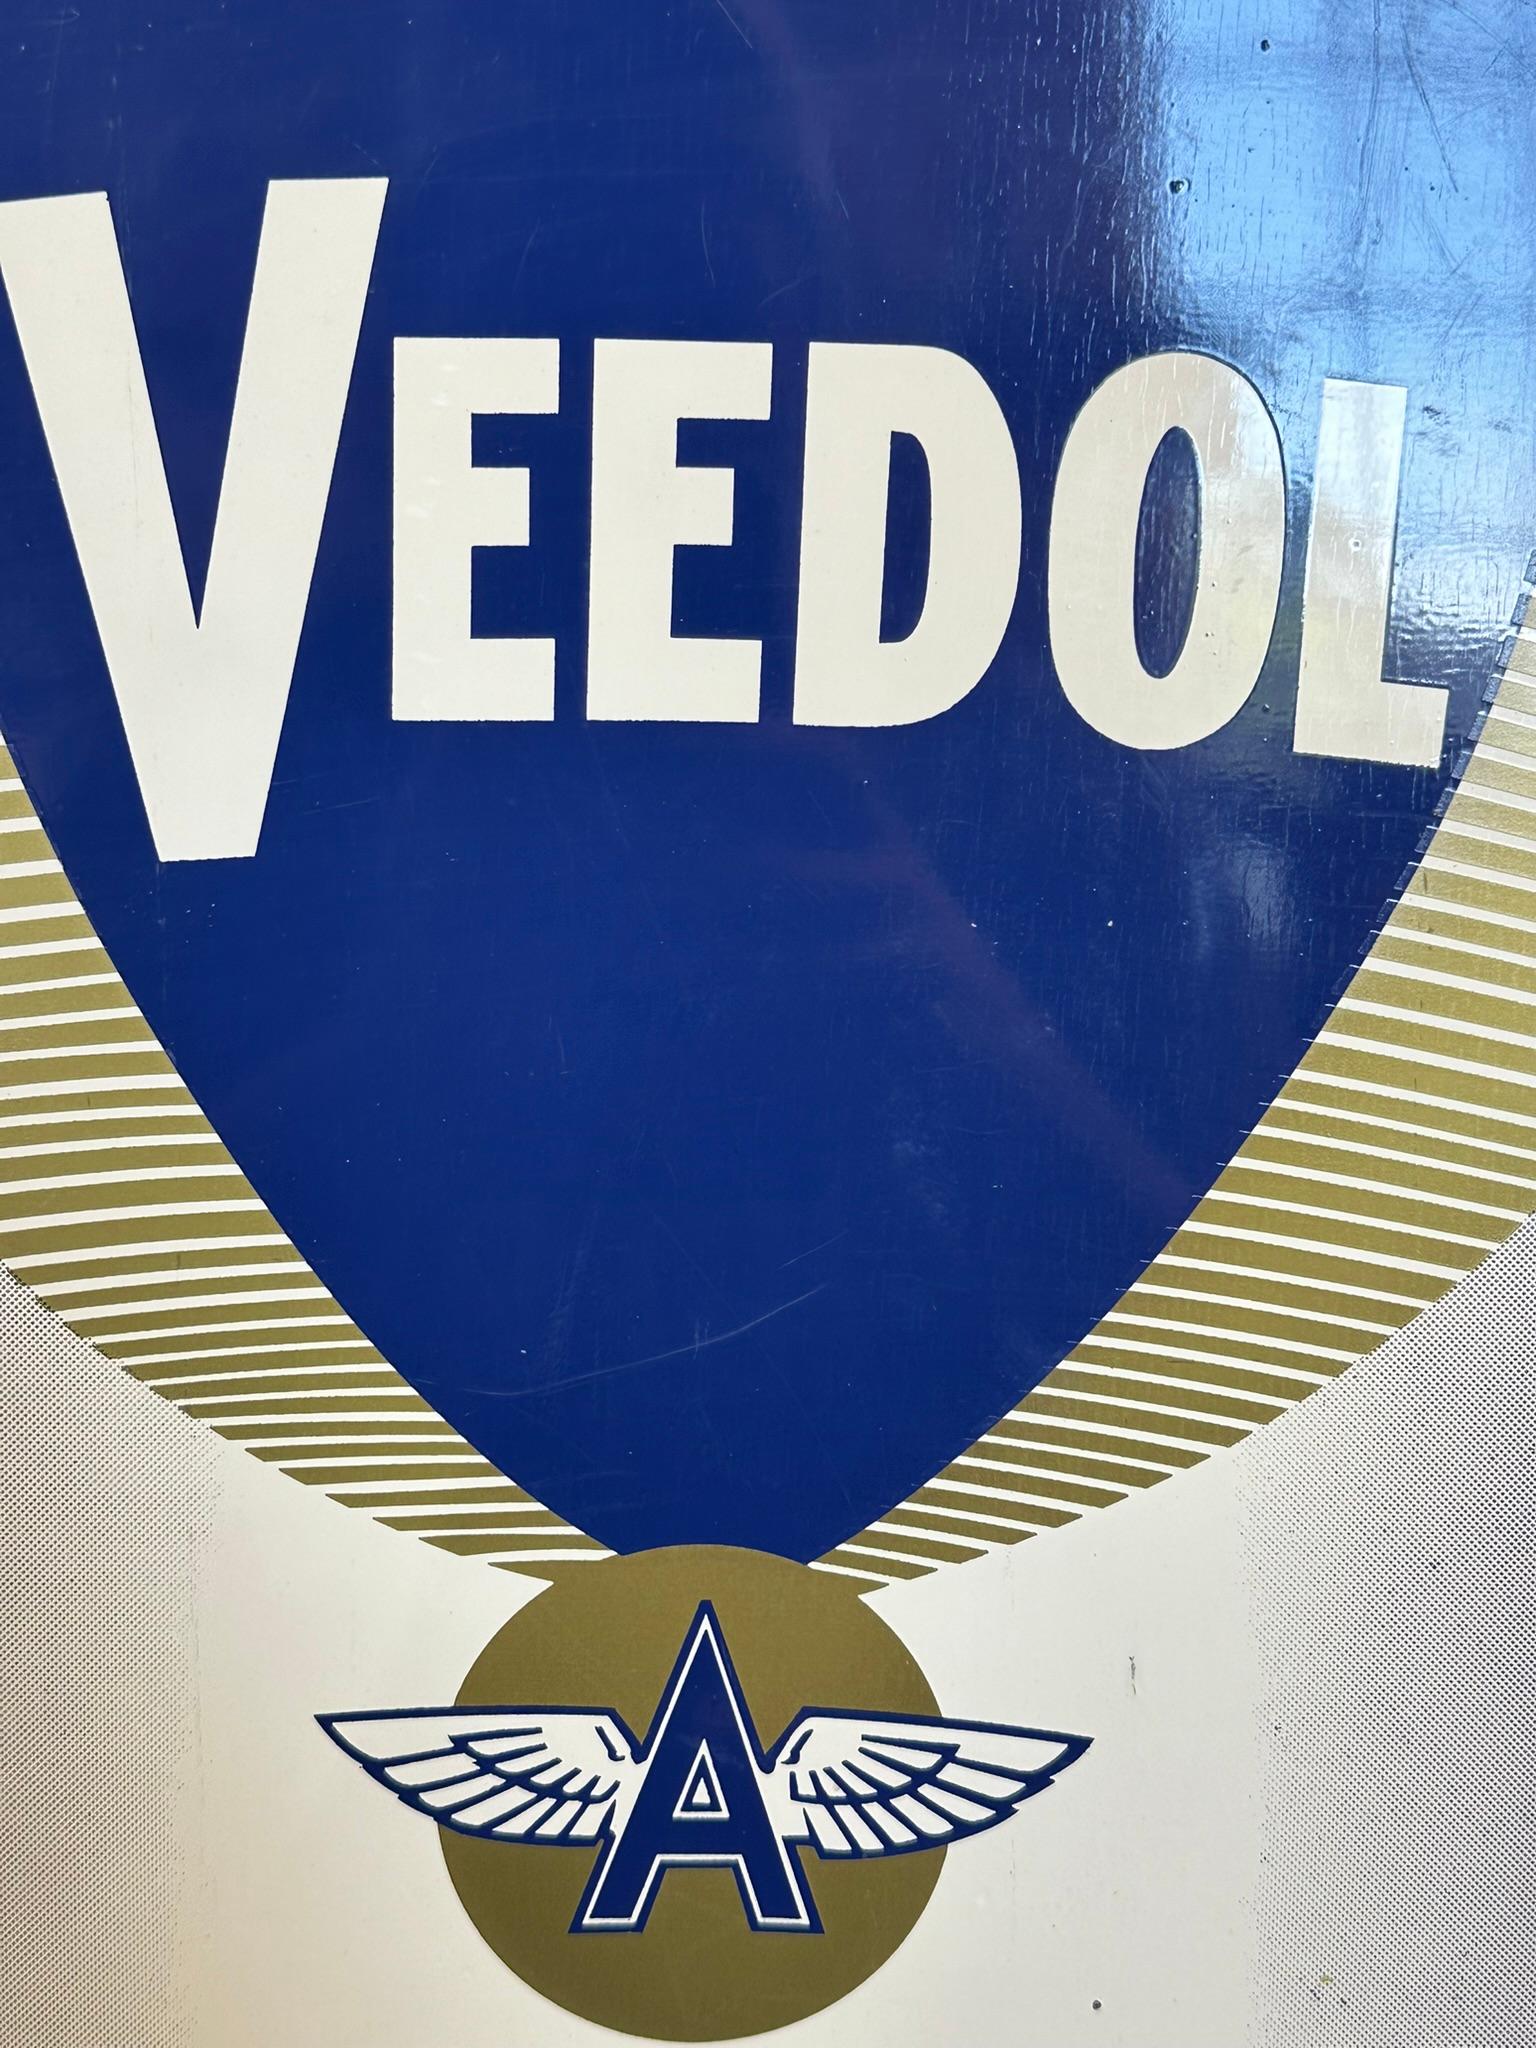 1950s Veedol Flying A 10-30 Motor Oil Painted Metal Advertising Flange Sign